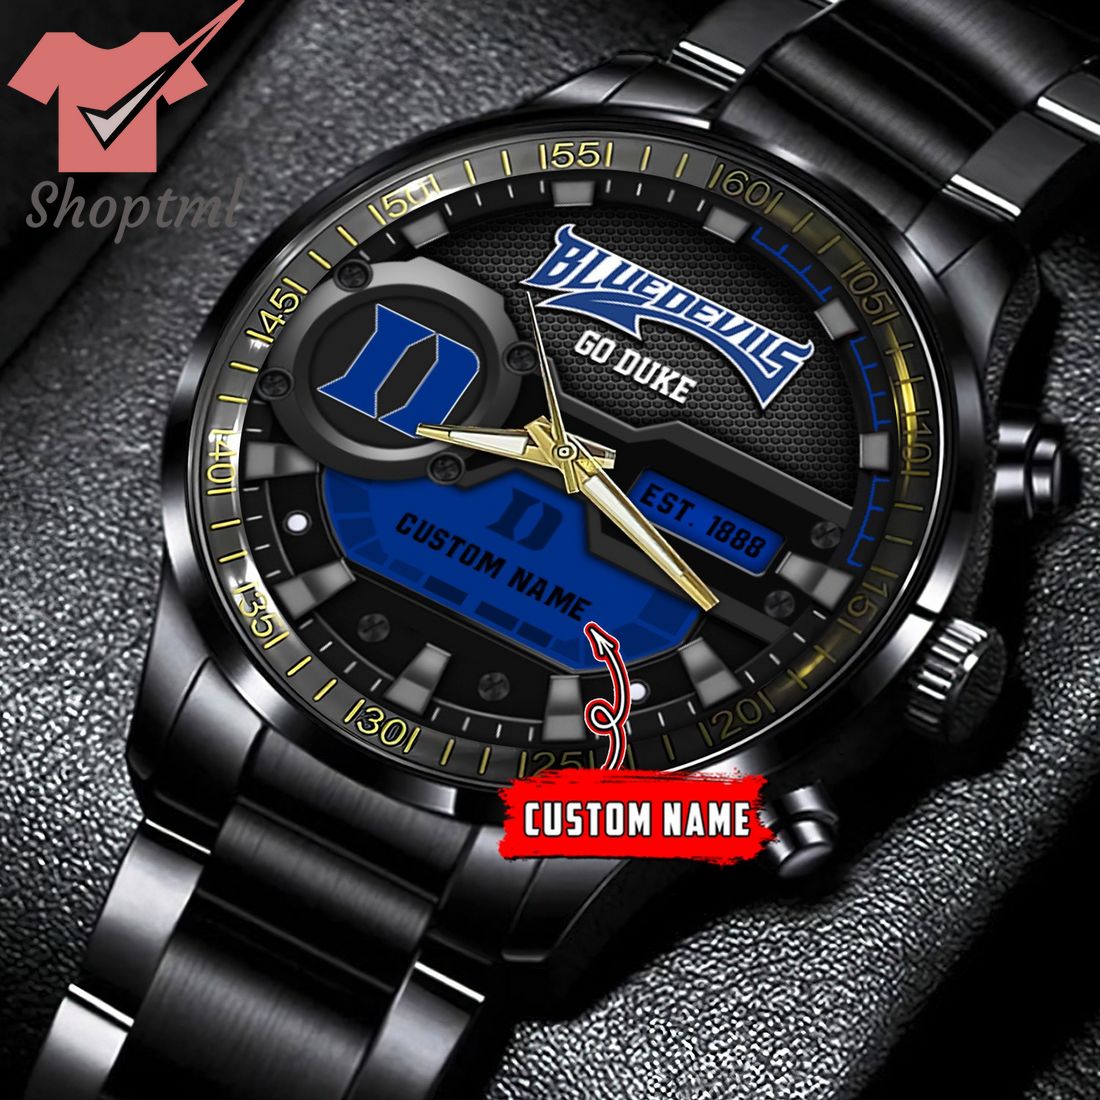 Duke Blue Devils go duke custom name black stainless steel watch